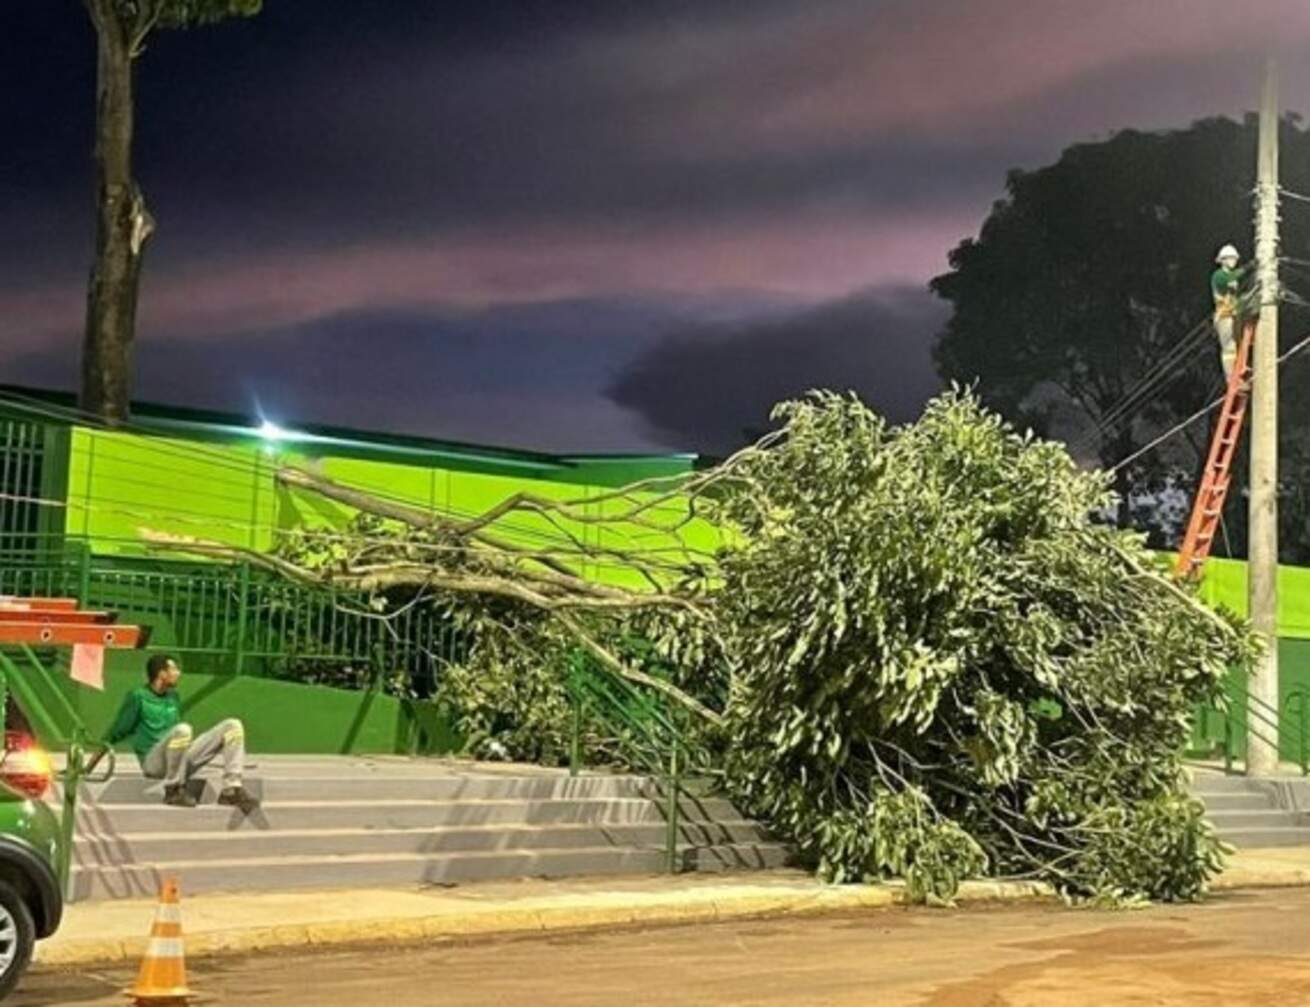 Ventos de 69 km/h destelham casas, deixam bairros sem energia e derrubam árvores em Coxim